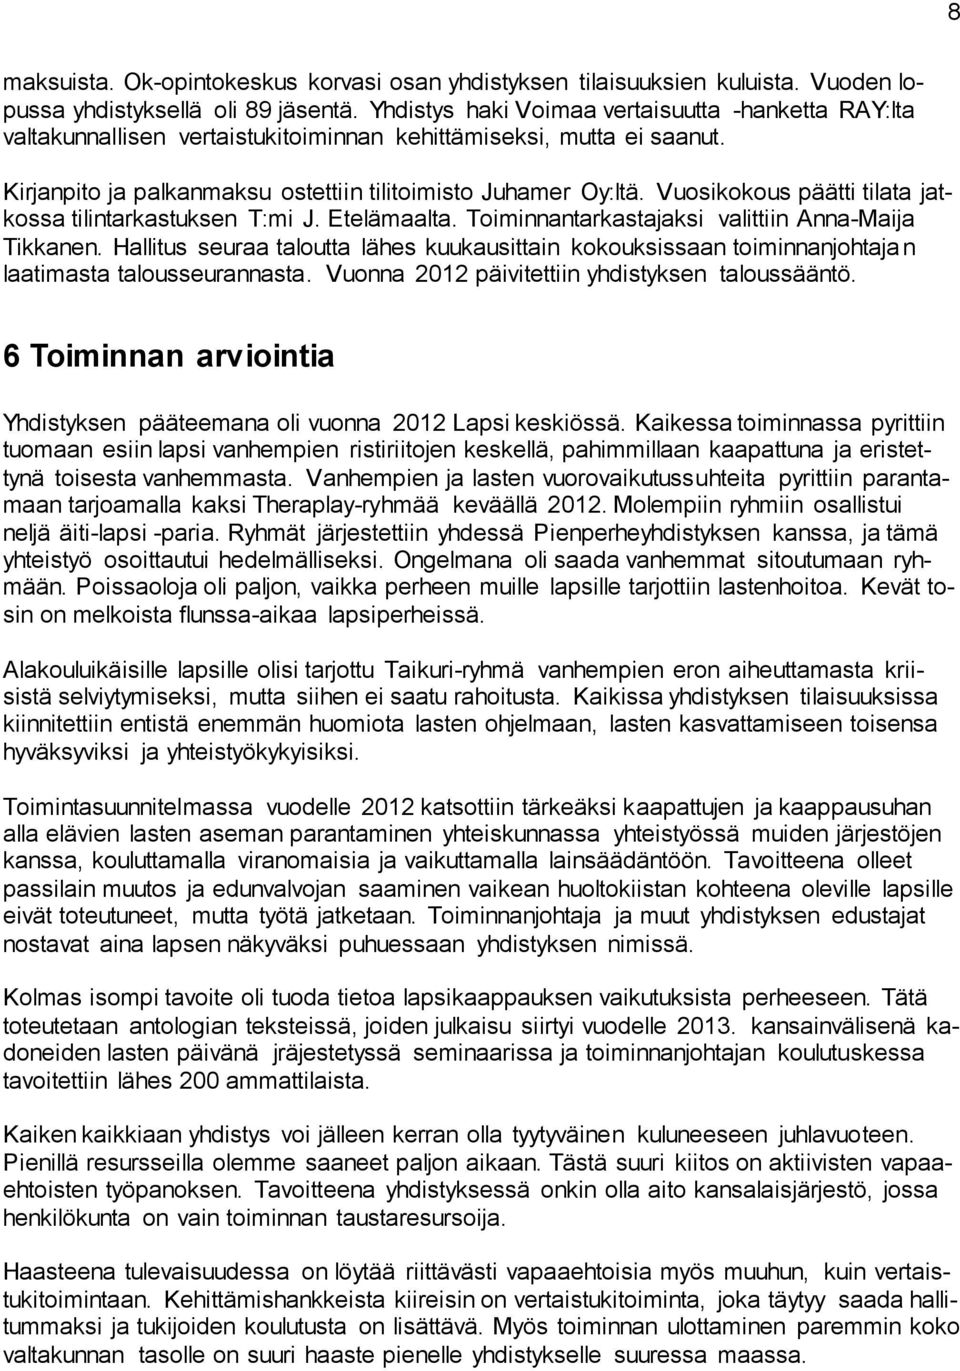 Vuosikokous päätti tilata jatkossa tilintarkastuksen T:mi J. Etelämaalta. Toiminnantarkastajaksi valittiin Anna-Maija Tikkanen.